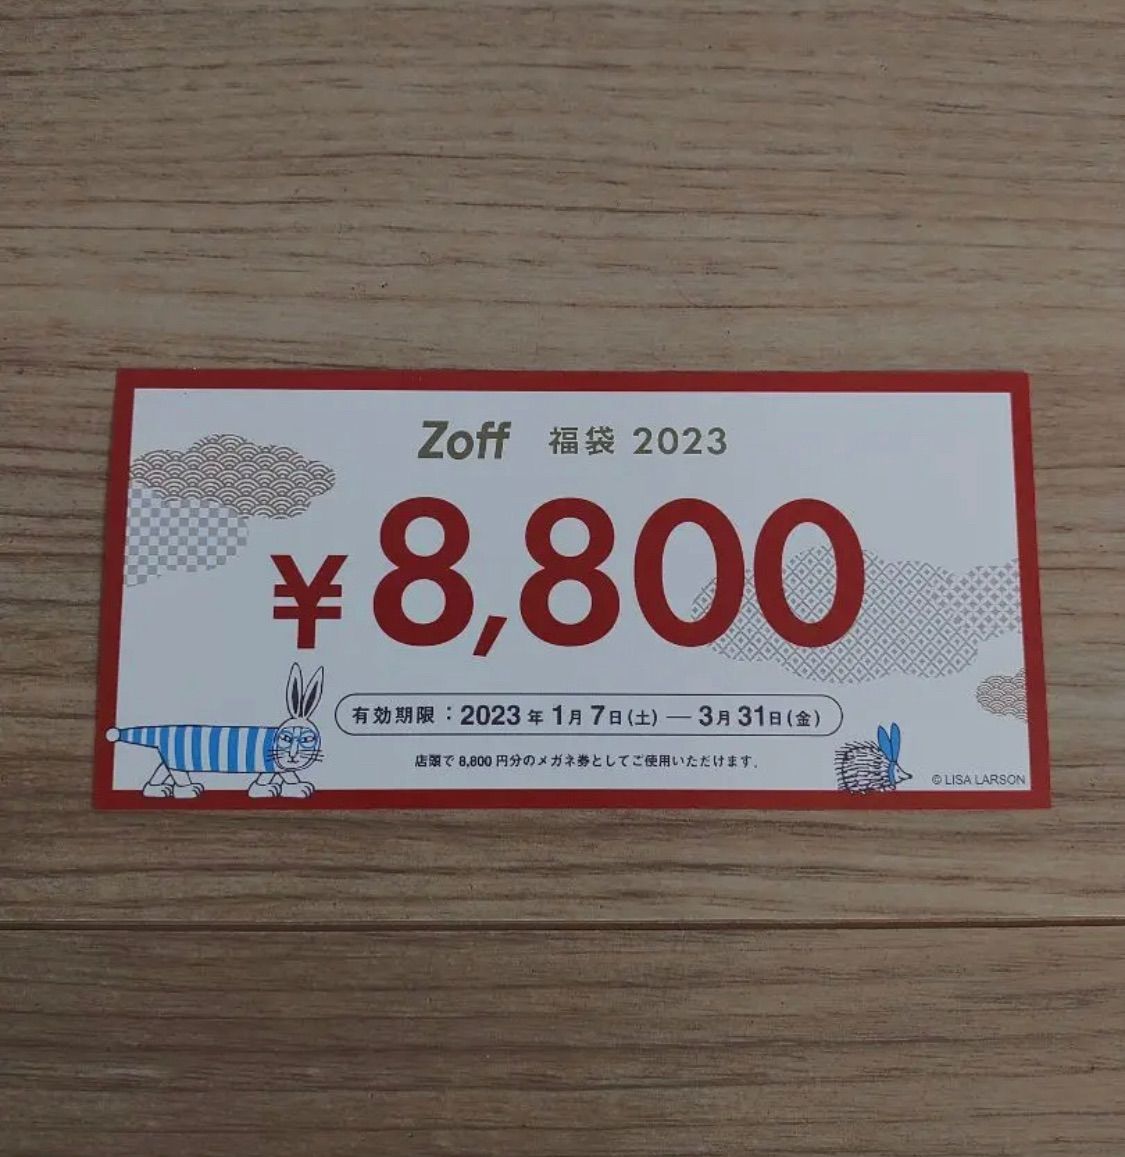 Zoff 福袋 2023 メガネ券 8,800円分